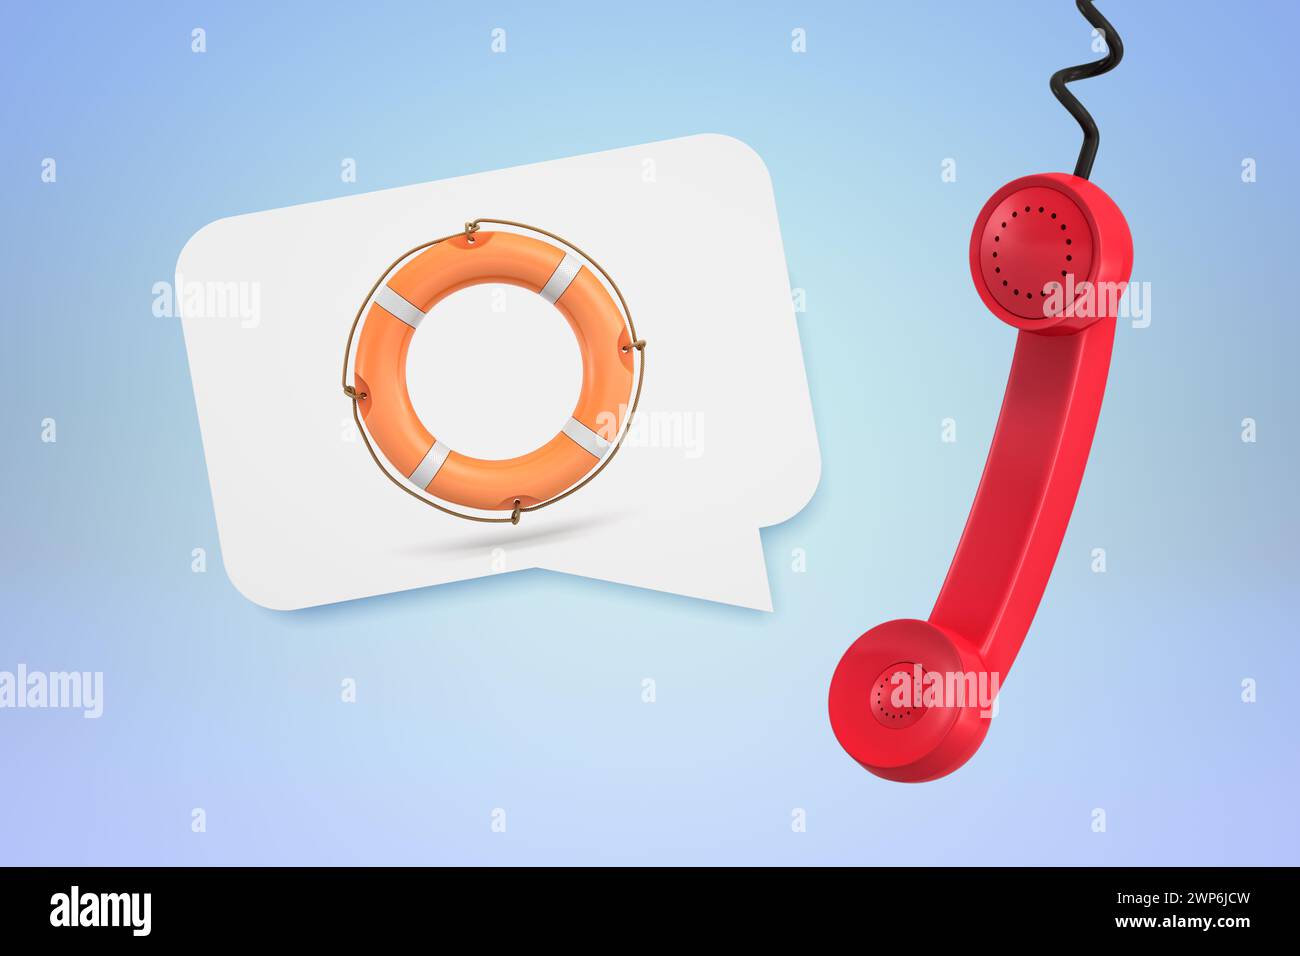 Lifebuoy and phone symbolizing emergency call Stock Photo